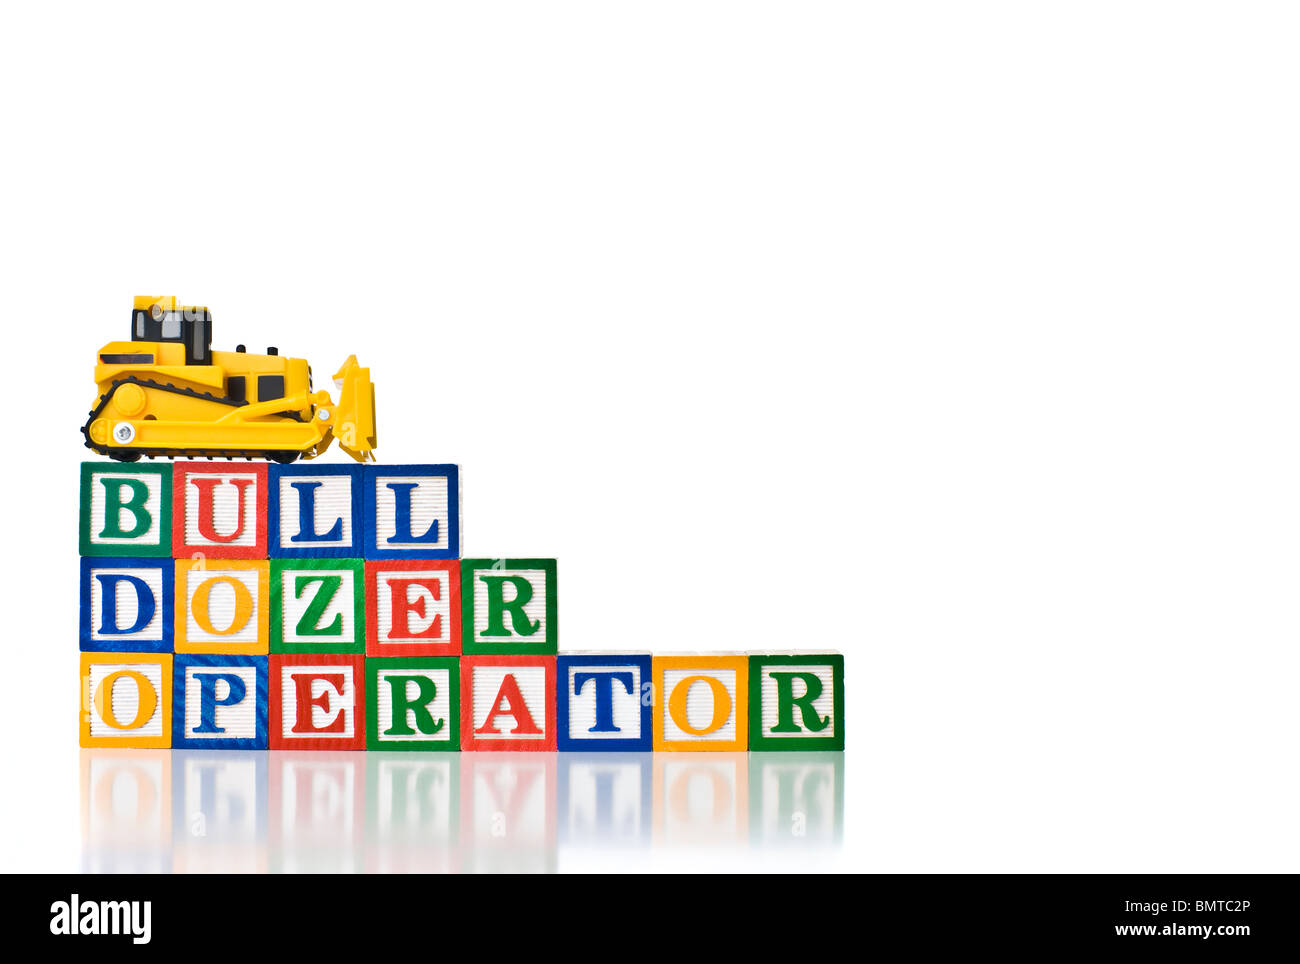 Bunte Kinder-Blöcke Rechtschreibung BULL DOZER-OPERATOR mit einem Bulldozer Modell Stockfoto